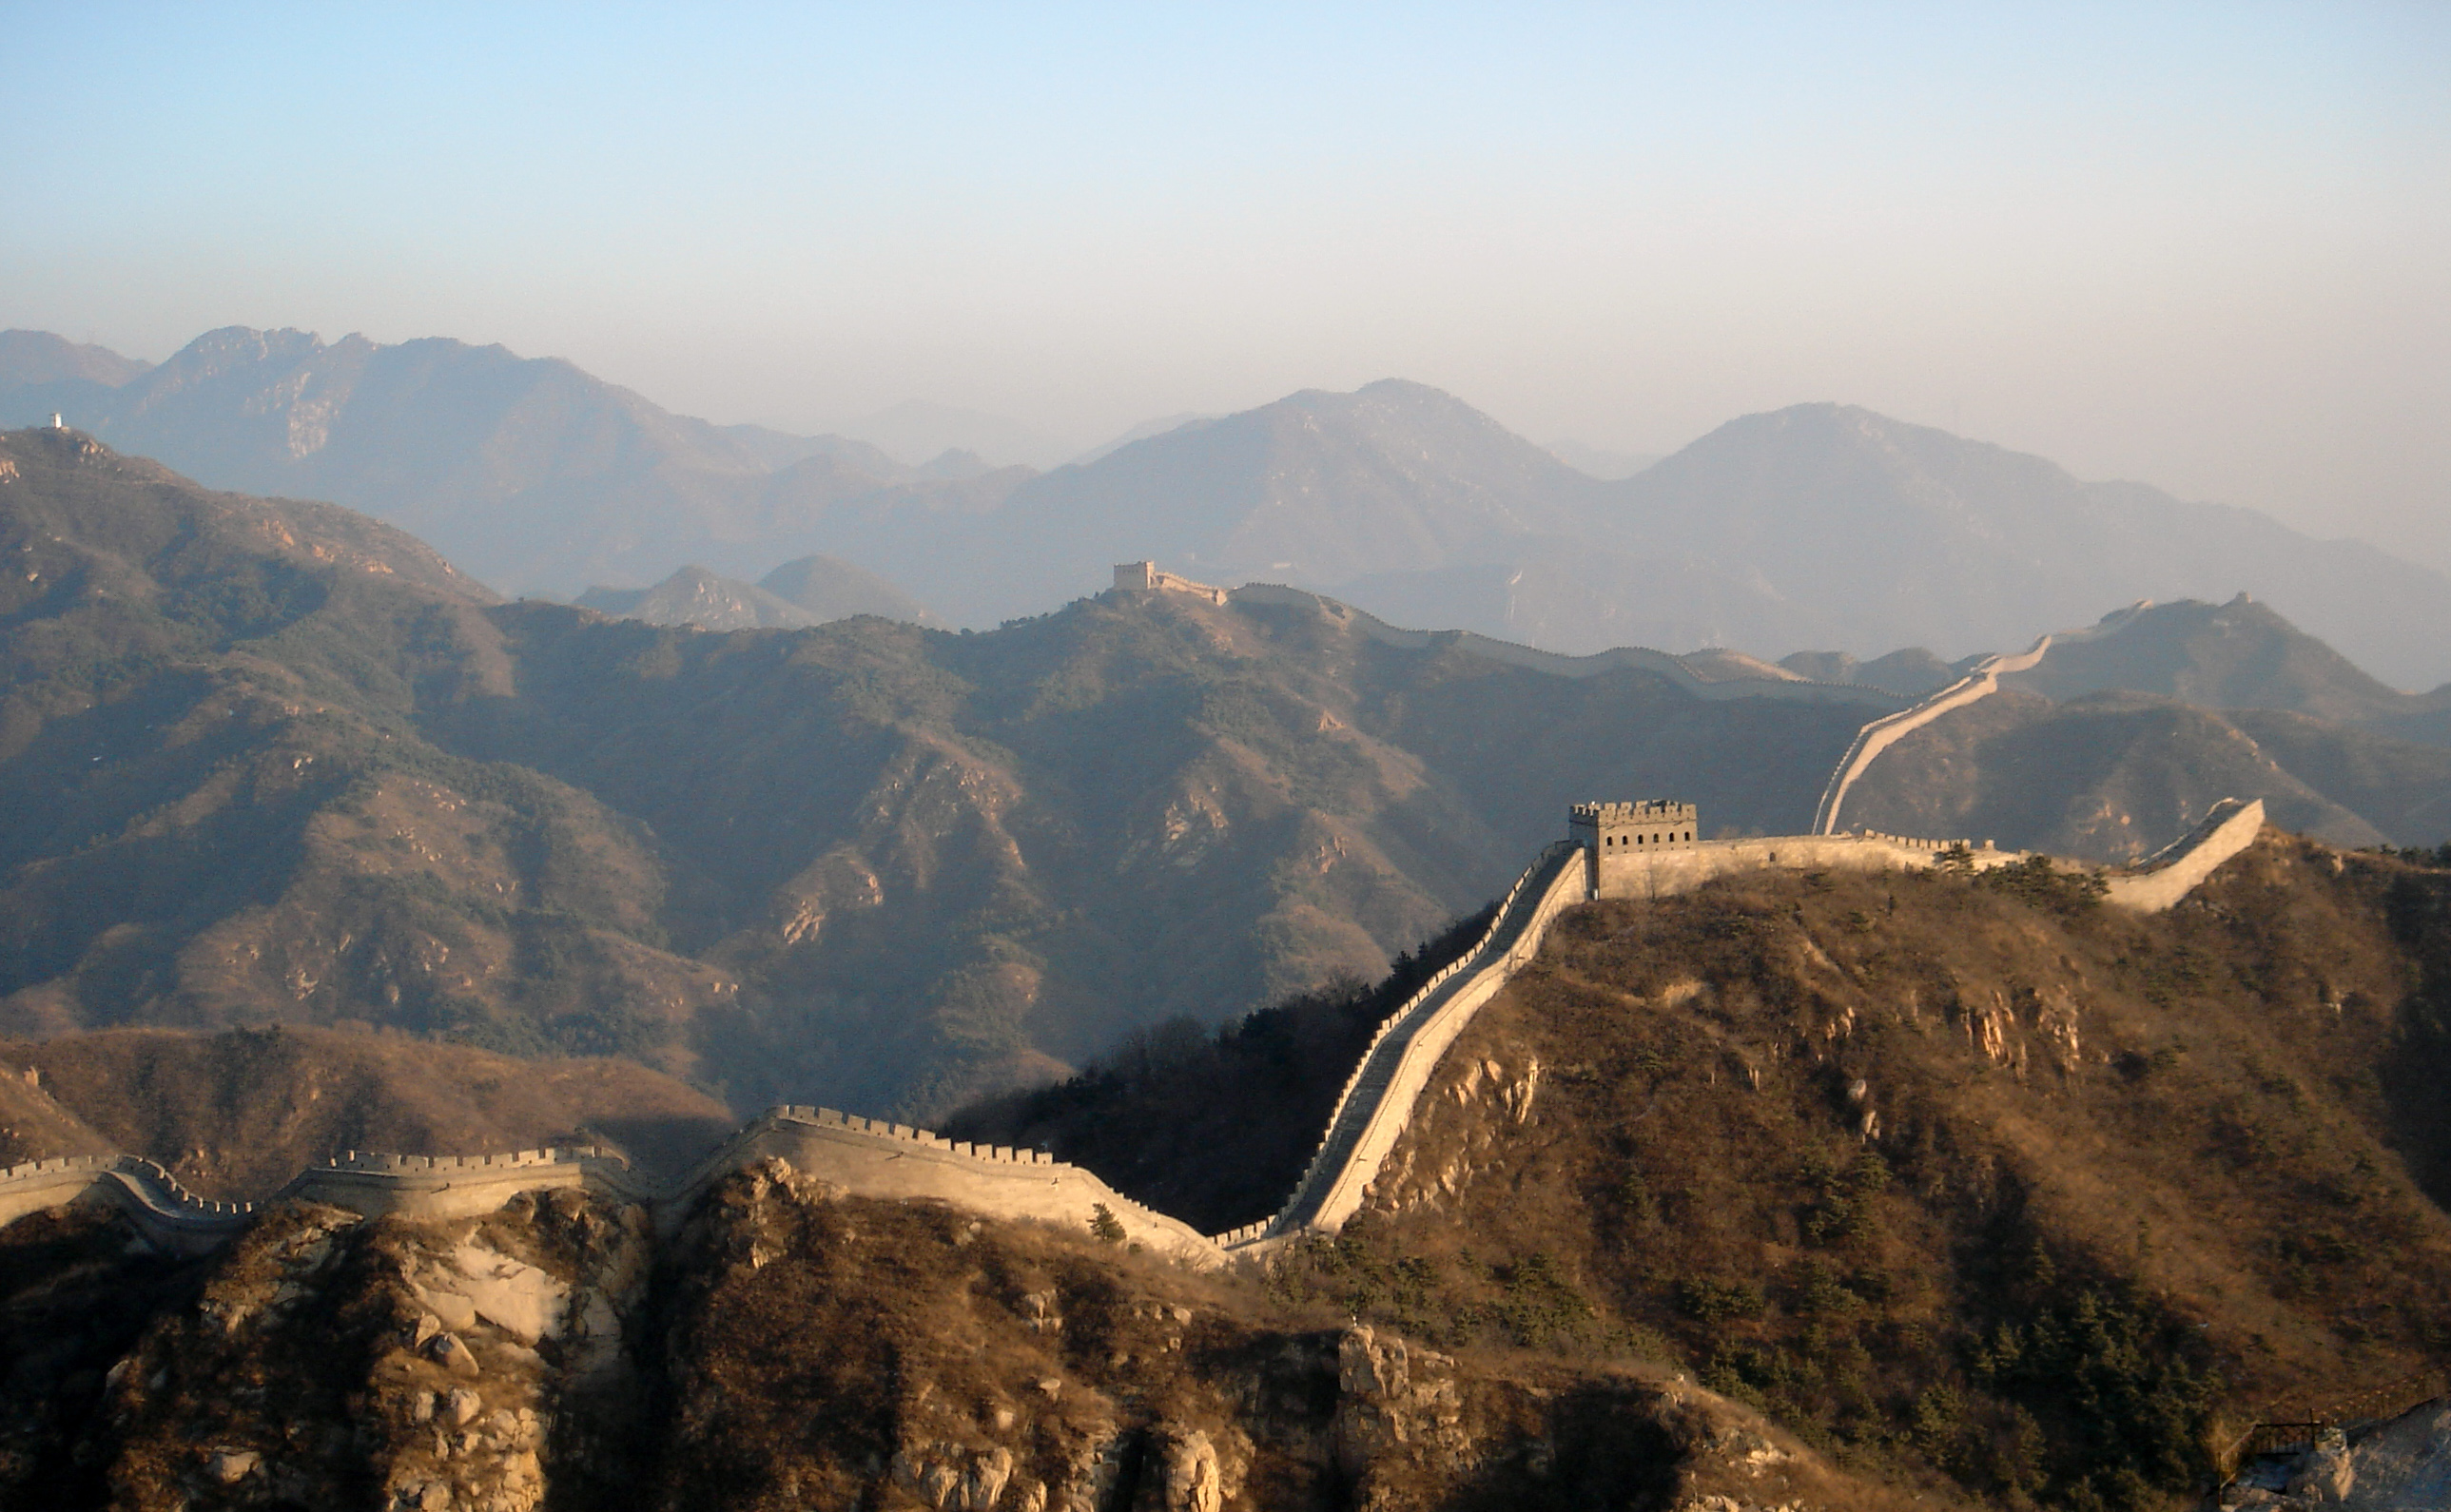 Man Made Great Wall Of China 2577x1590